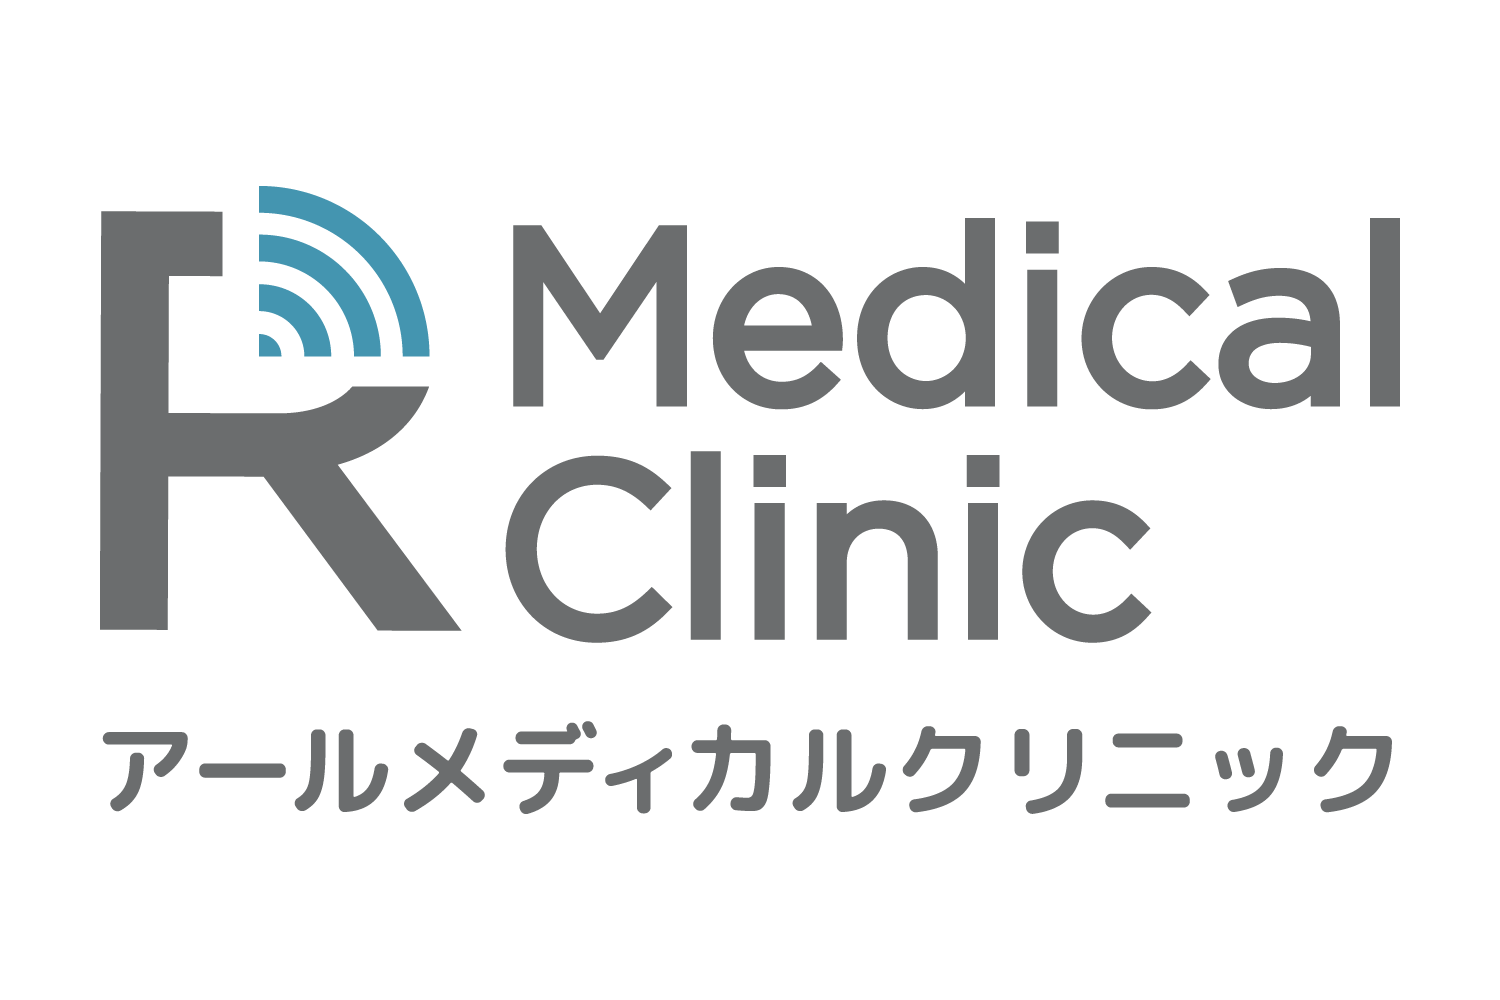 R medical クリニックのロゴ画像